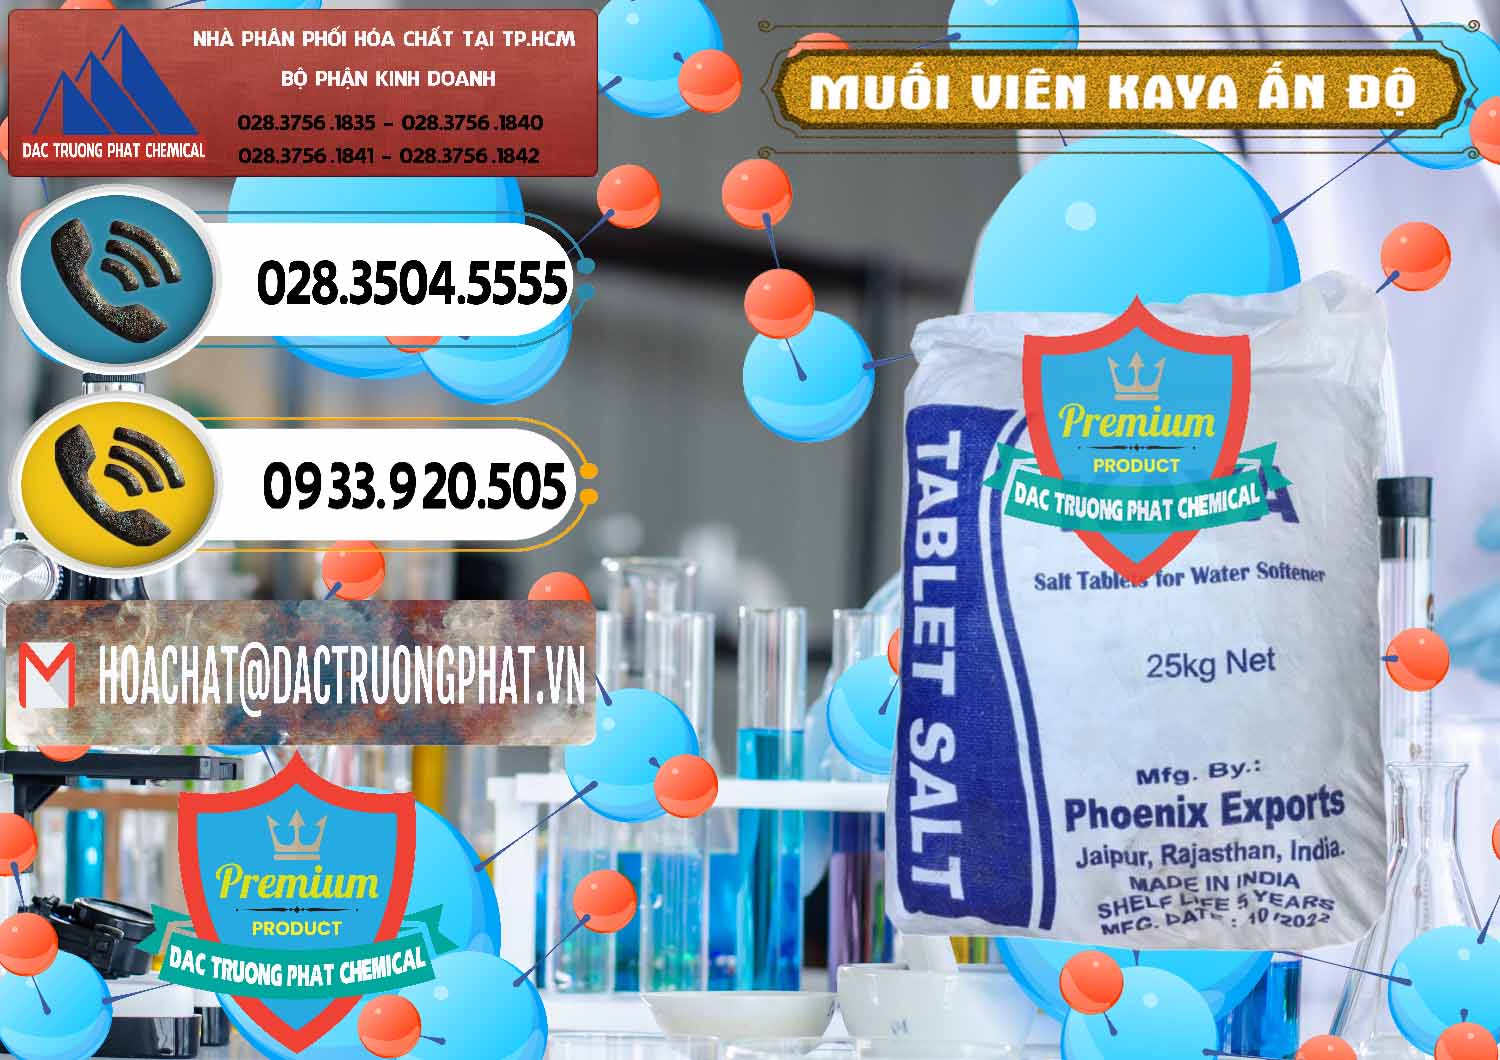 Đơn vị cung cấp ( bán ) Muối NaCL – Sodium Chloride Dạng Viên Tablets Kaya Ấn Độ India - 0368 - Phân phối và nhập khẩu hóa chất tại TP.HCM - hoachatdetnhuom.vn